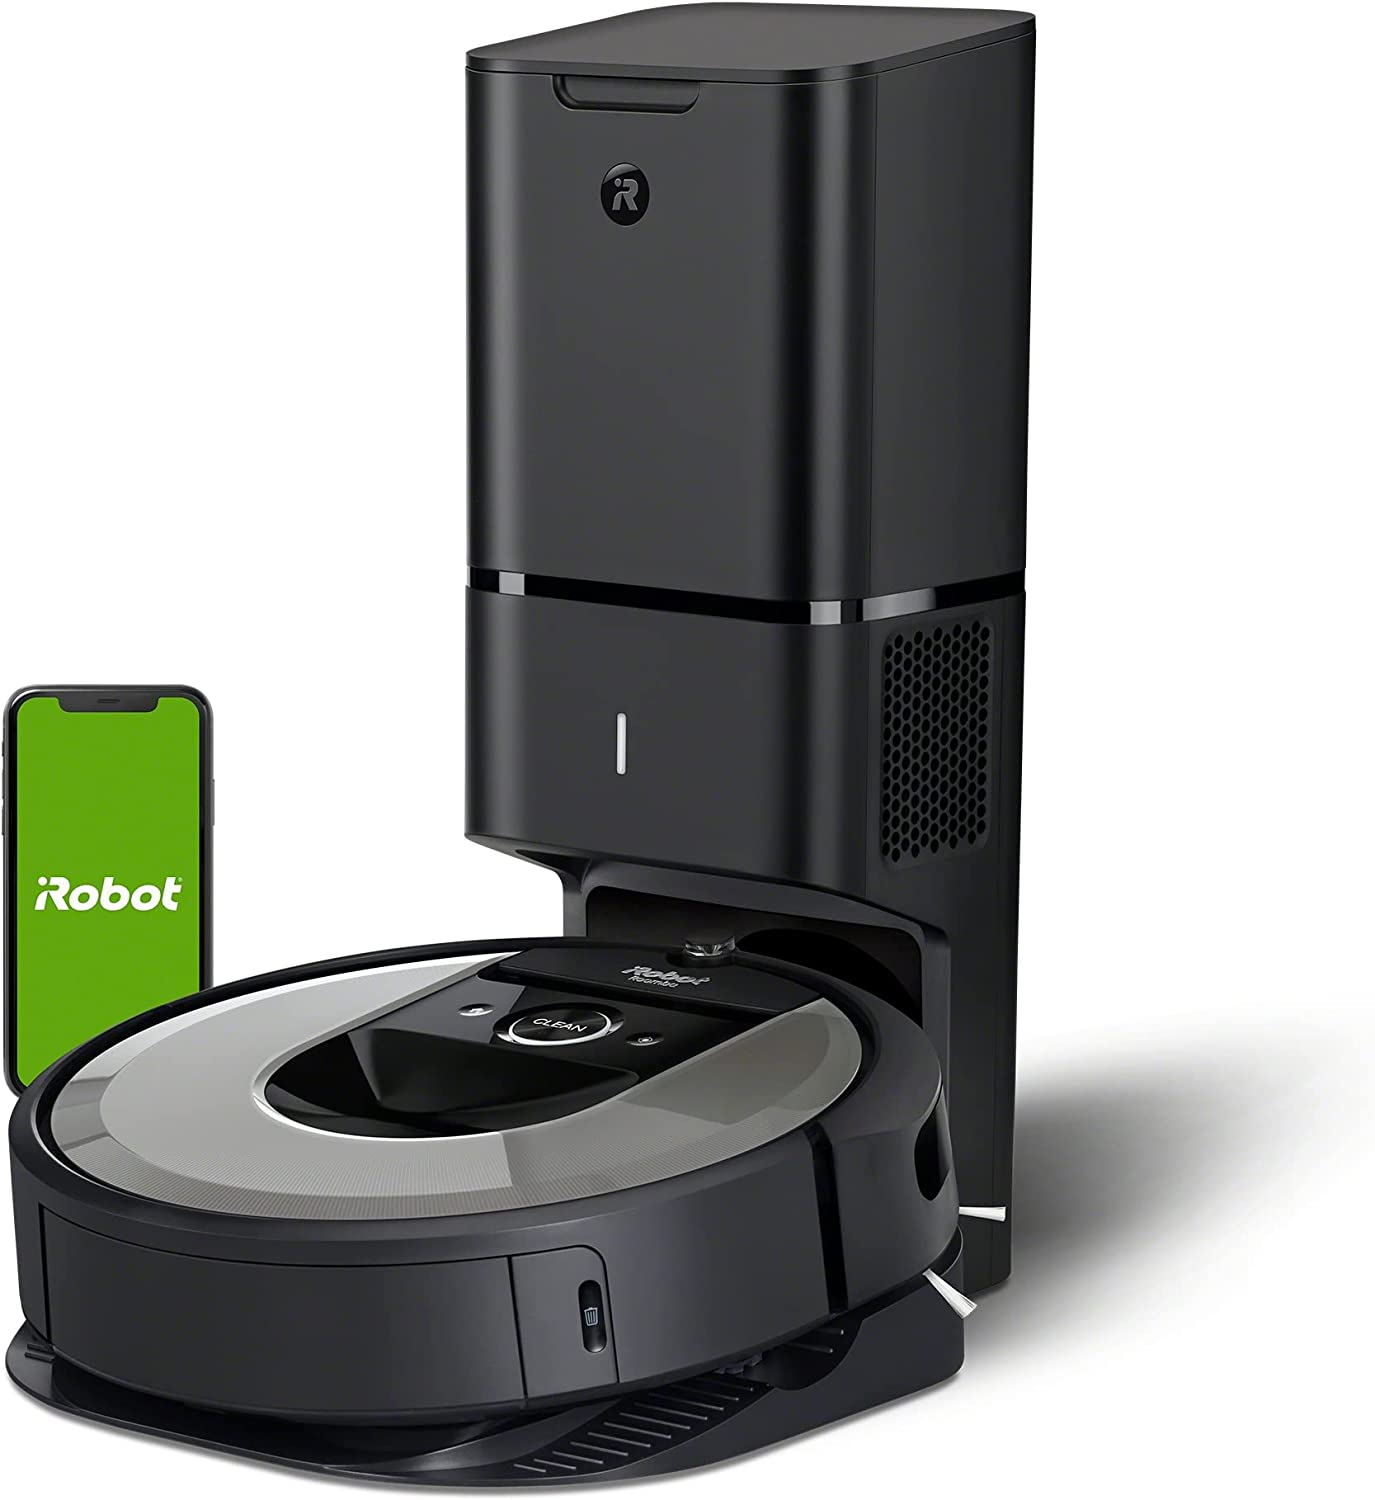 Roomba i7+ tegen Roomba j7+ tegen Roomba s9+